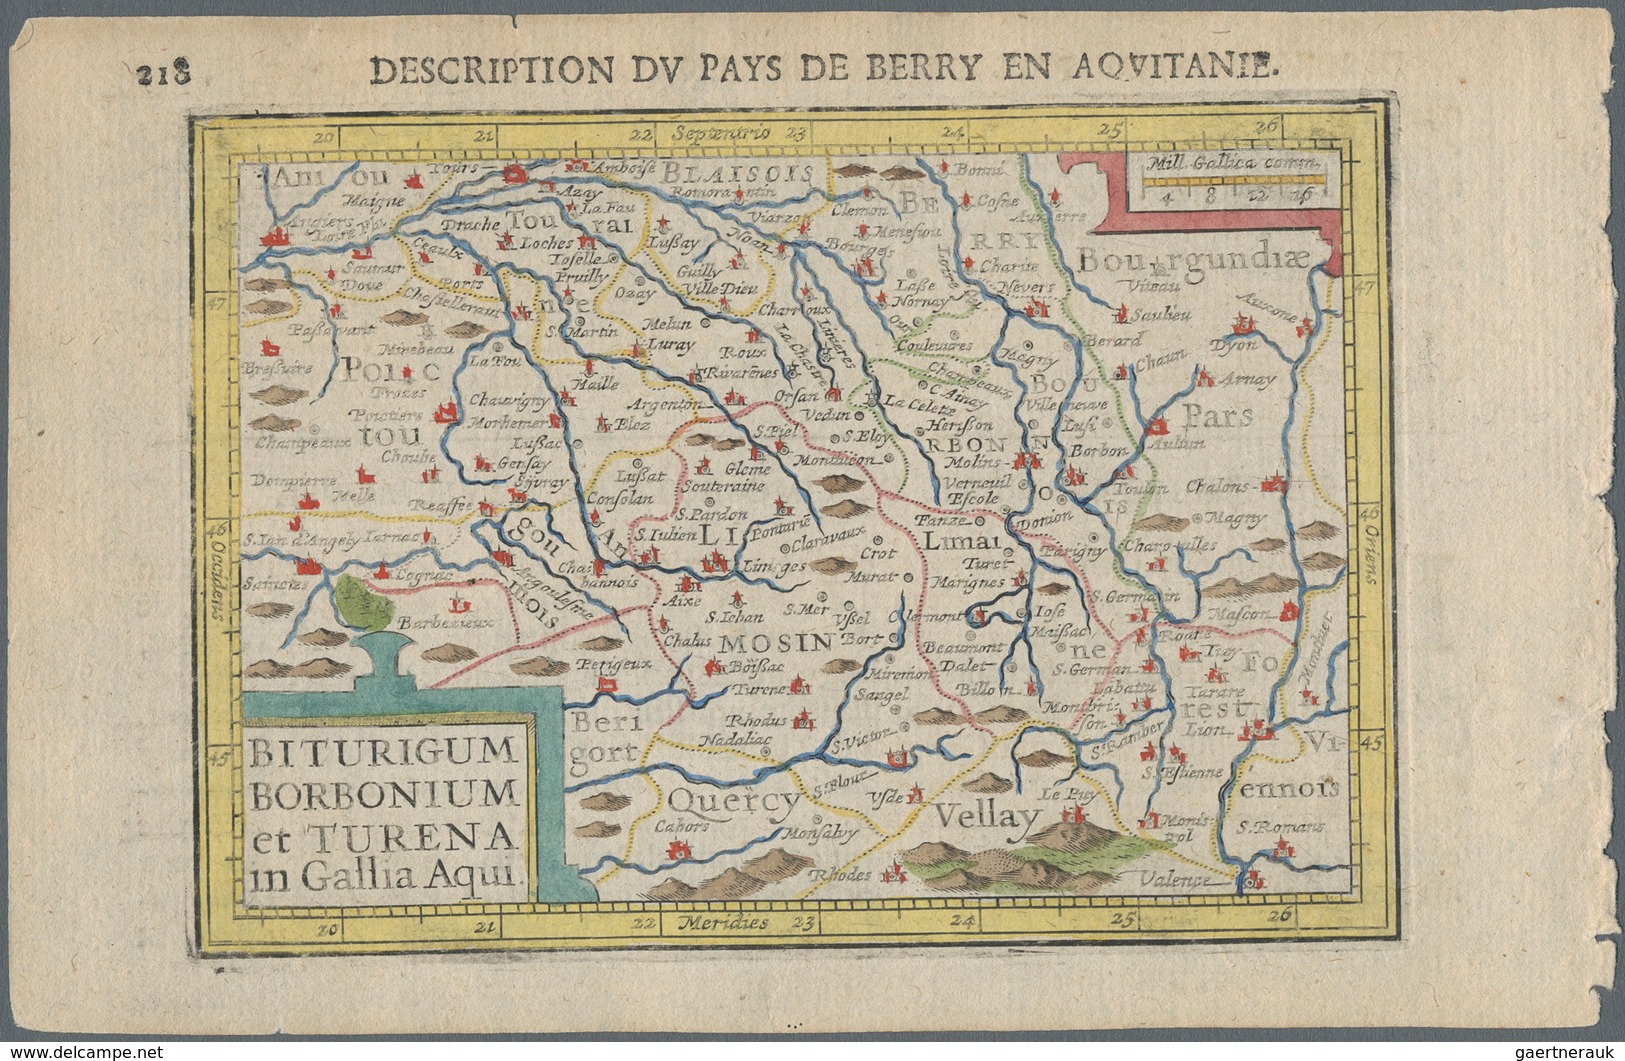 Landkarten Und Stiche: 1610. Biturgum Borbonium Et Turena In Gallia Aqui. Bertius, Petrus. Attractiv - Géographie